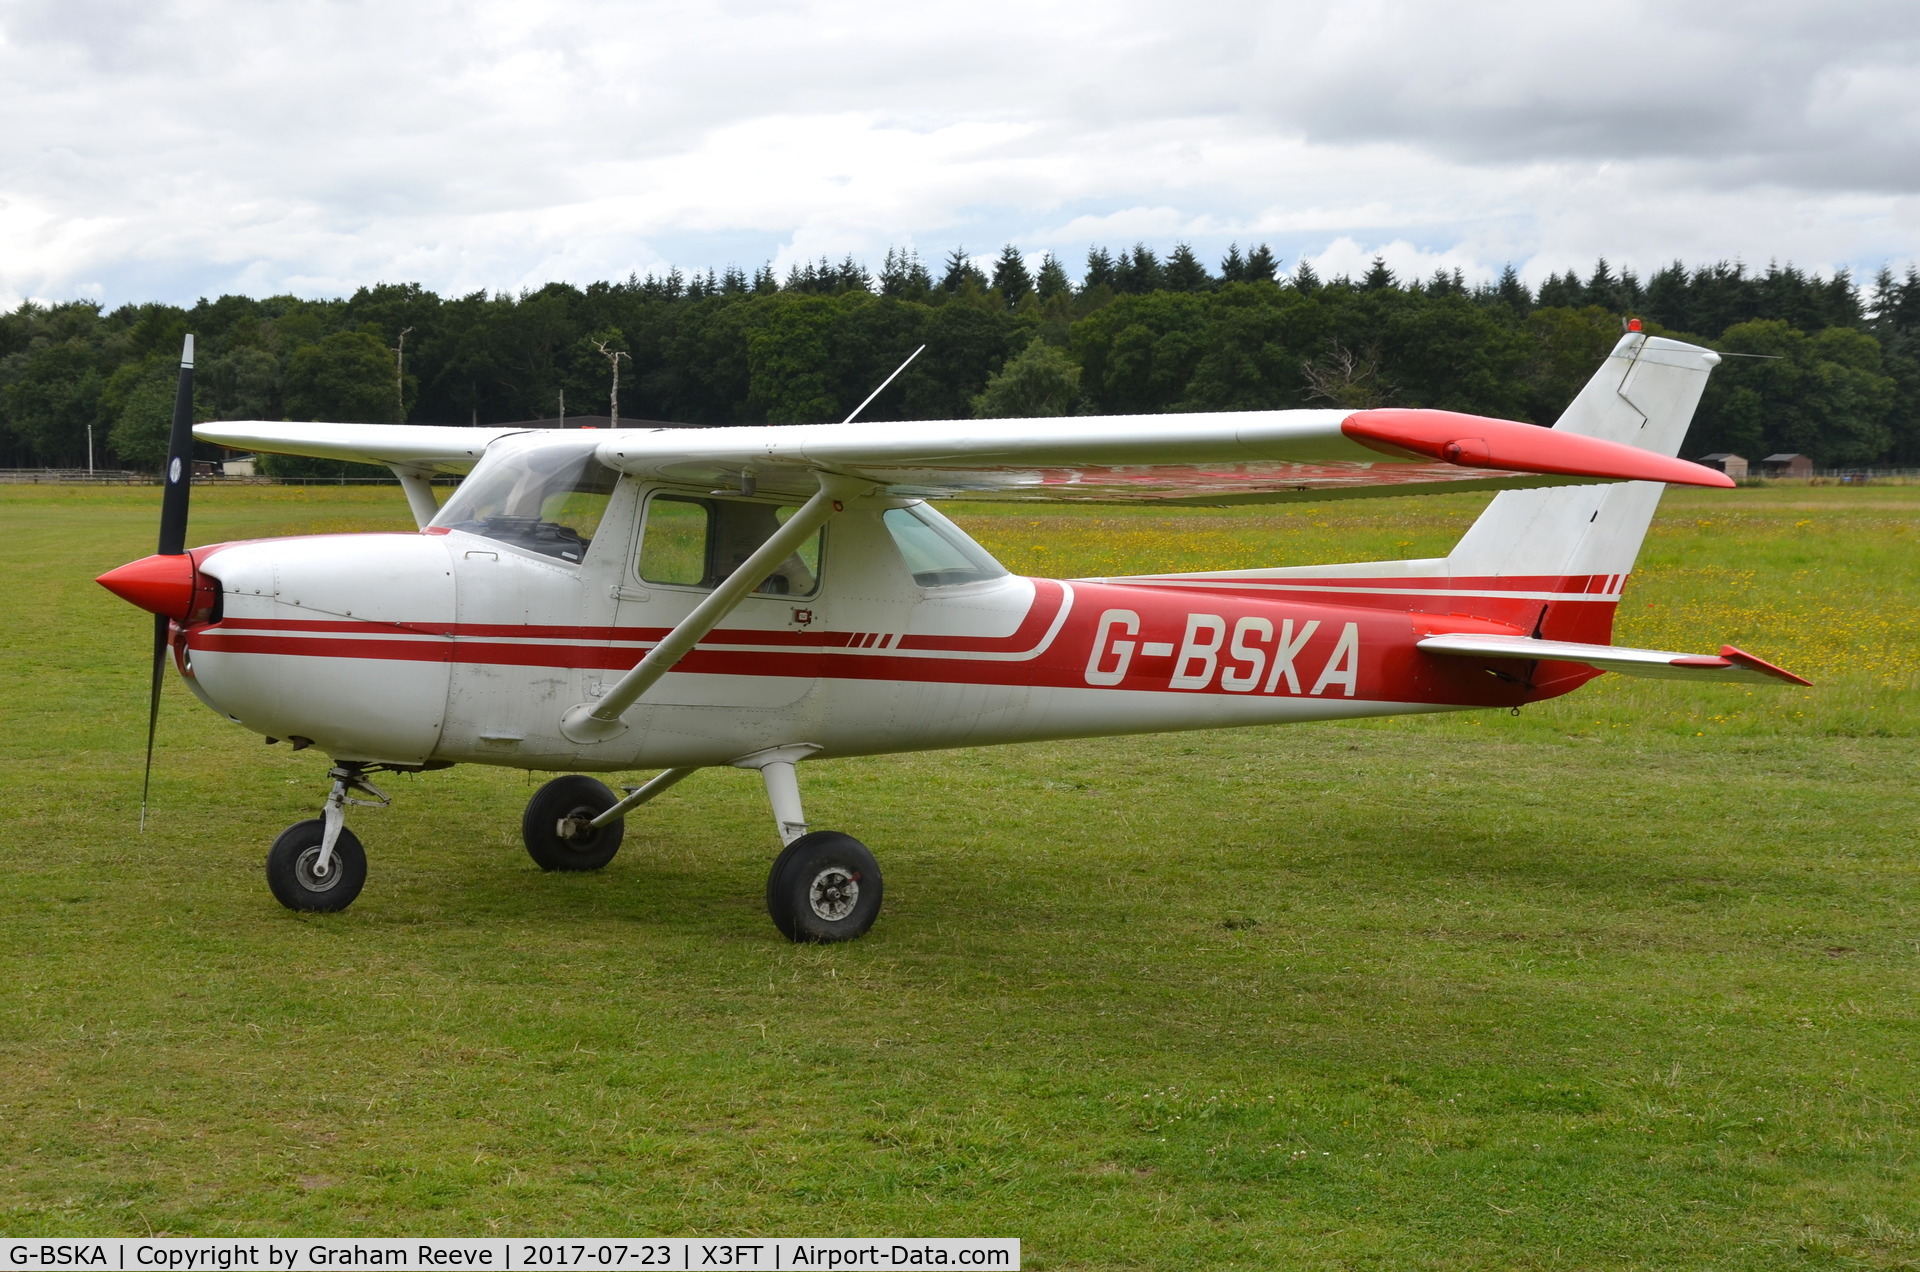 G-BSKA, 1974 Cessna 150M C/N 150-76137, Parked at Felthorpe.